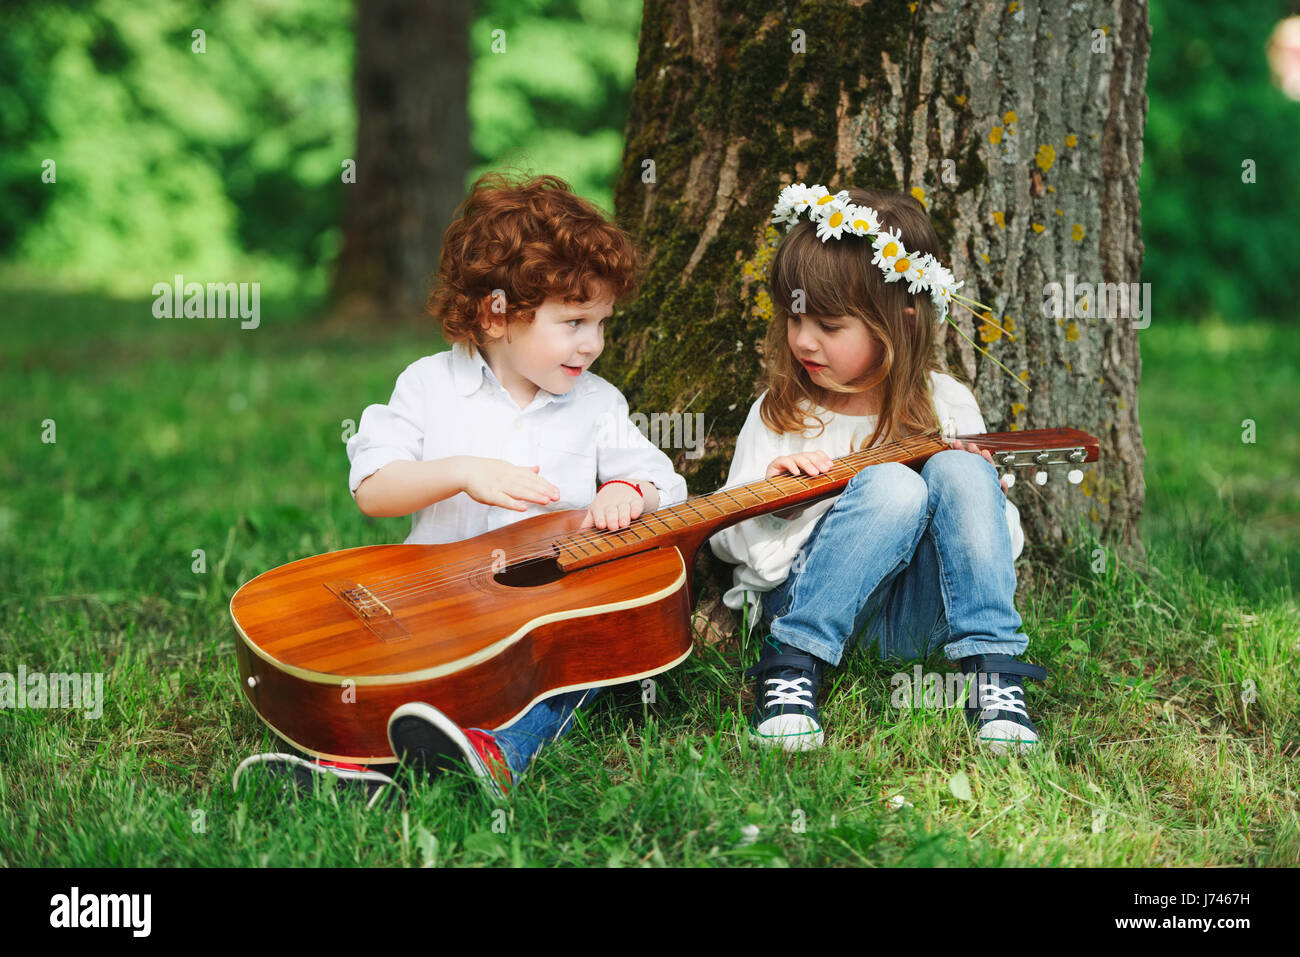 niedliche kleine Kinder, die Gitarre zu spielen Stockfotografie - Alamy